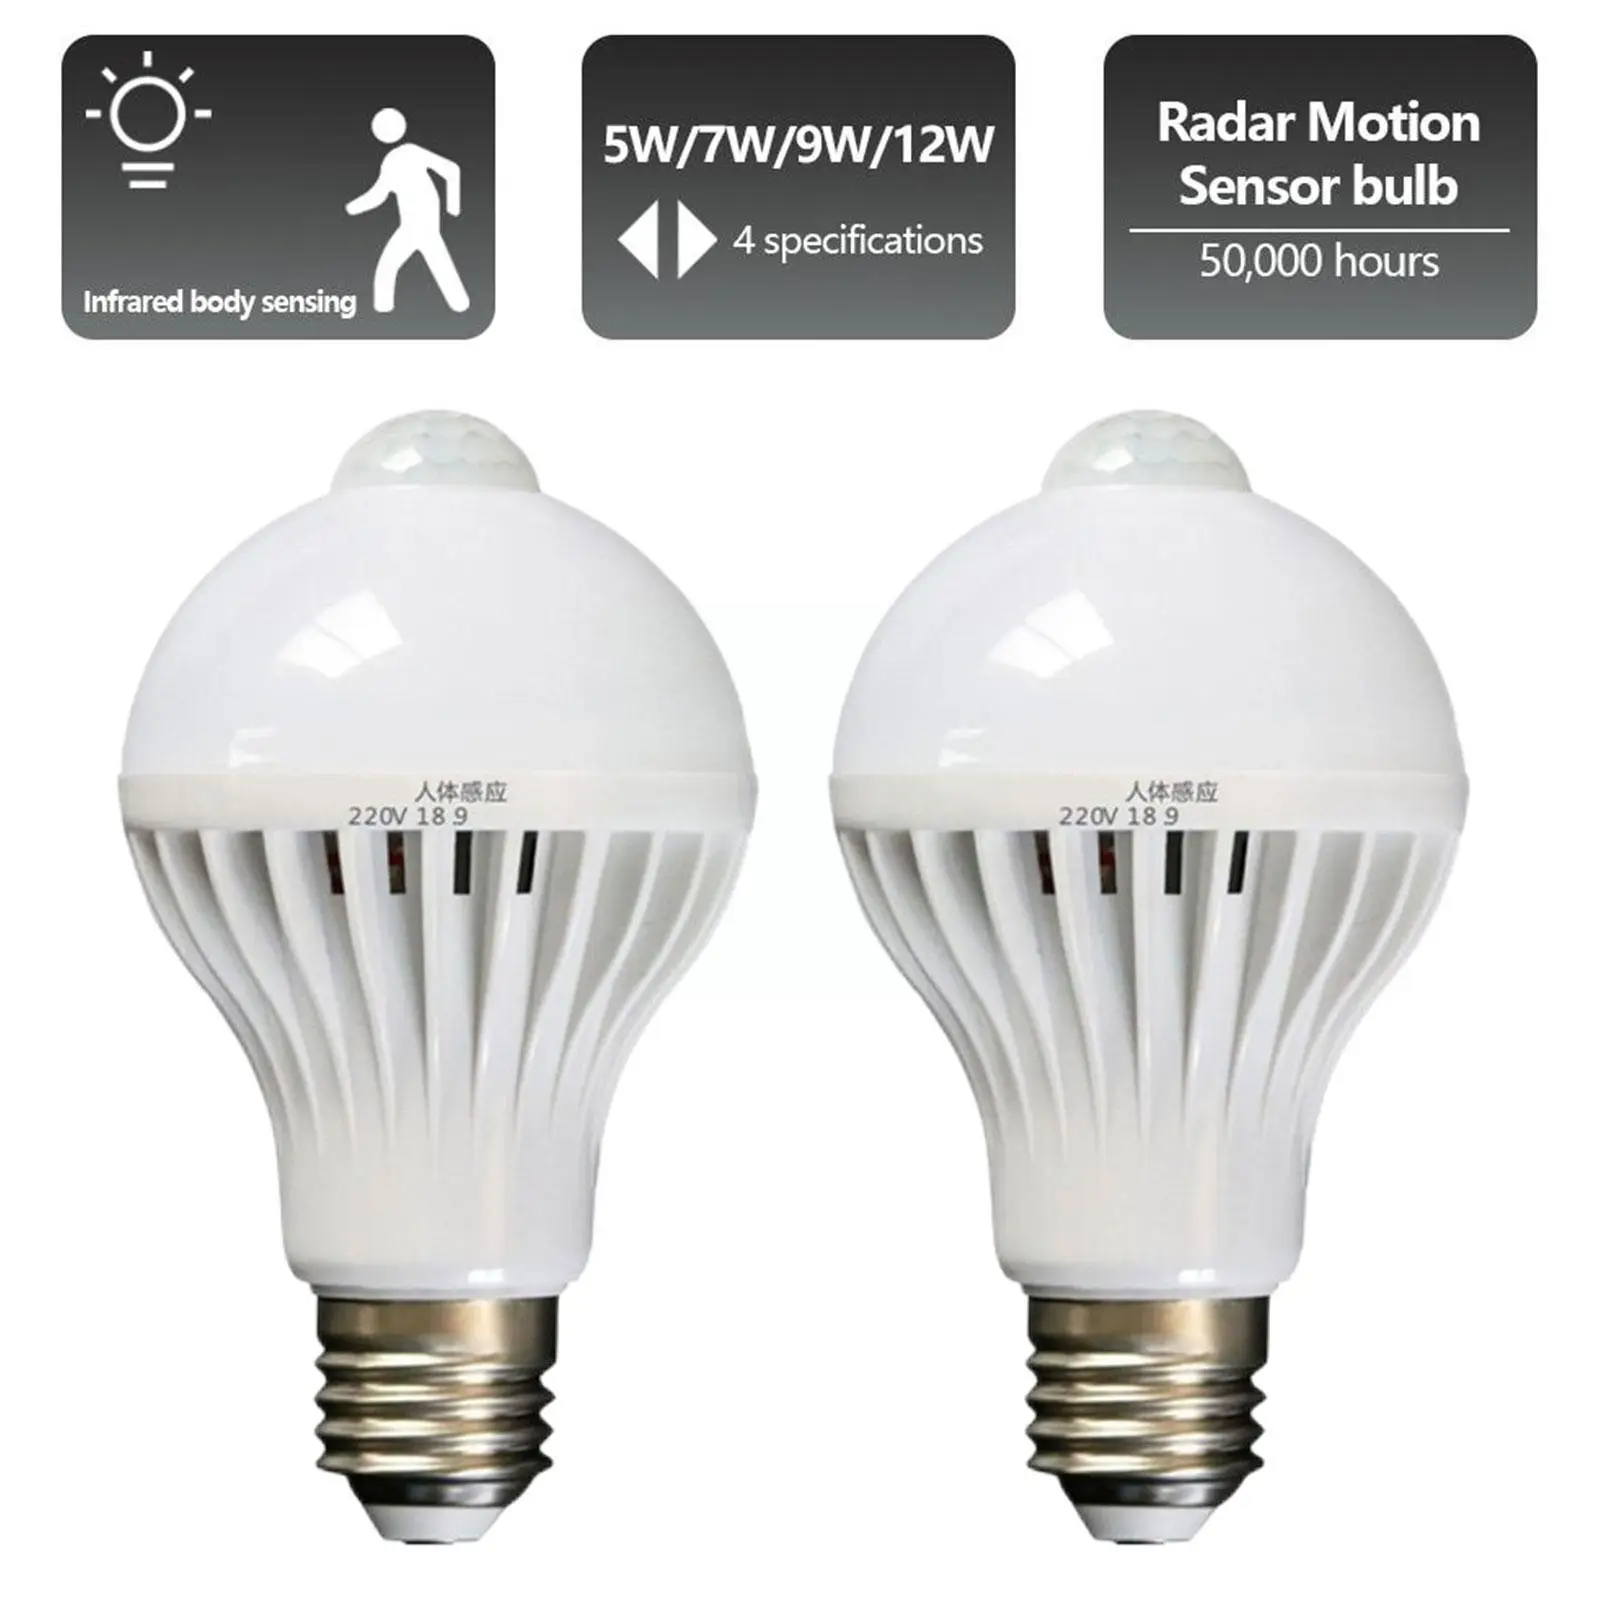 

PIR Motion Sensor LED Bulb E27 Lamp 5W 7W 12W 110V Light 220V Bulb Stair Hallway Corridor Lamps Led Induction Night Light S1W4